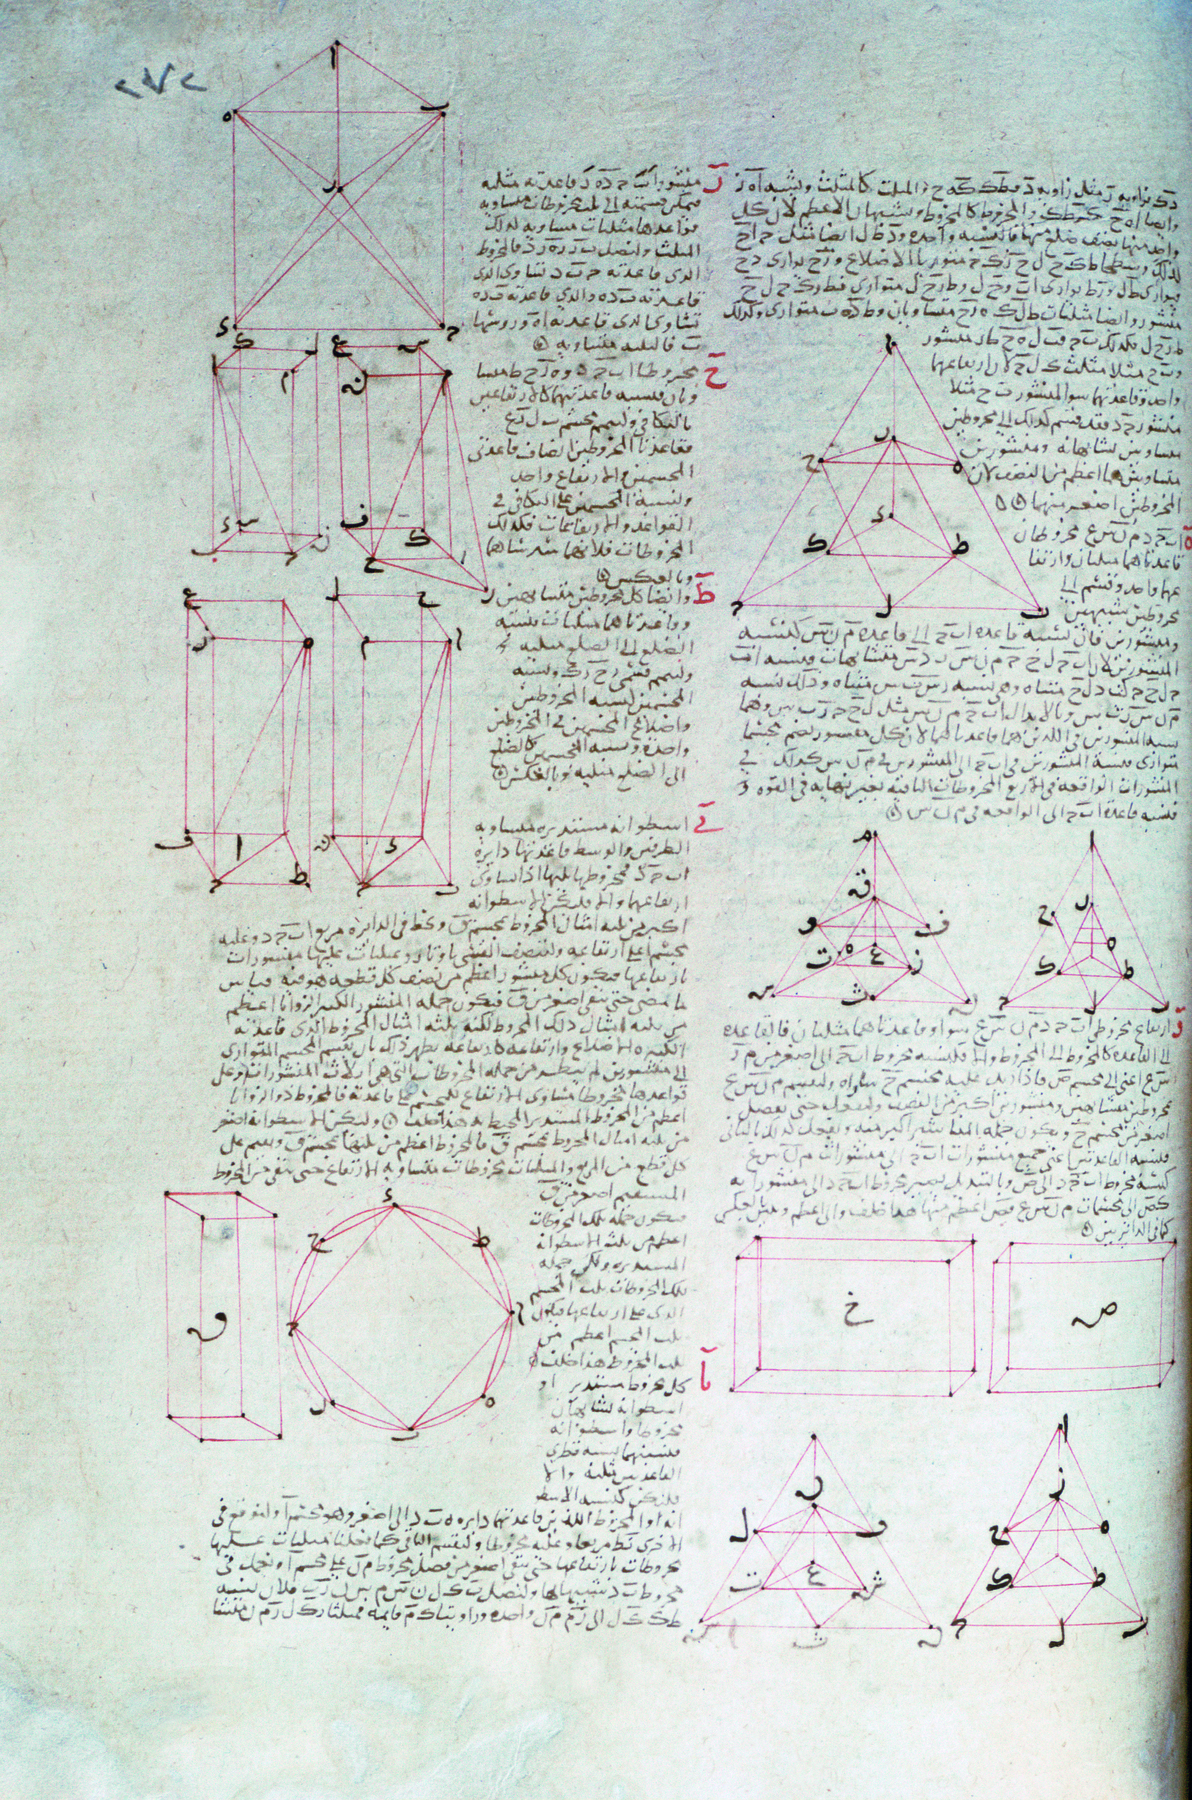 Página de livro.  Página de livro manuscrito de cor cinza, com ilustrações de formas geométricas em vermelho, há: cubos, pirâmides, paralelepípedos entre outras.  Entre as formas, texto de cor preta em caracteres do alfabeto árabe.